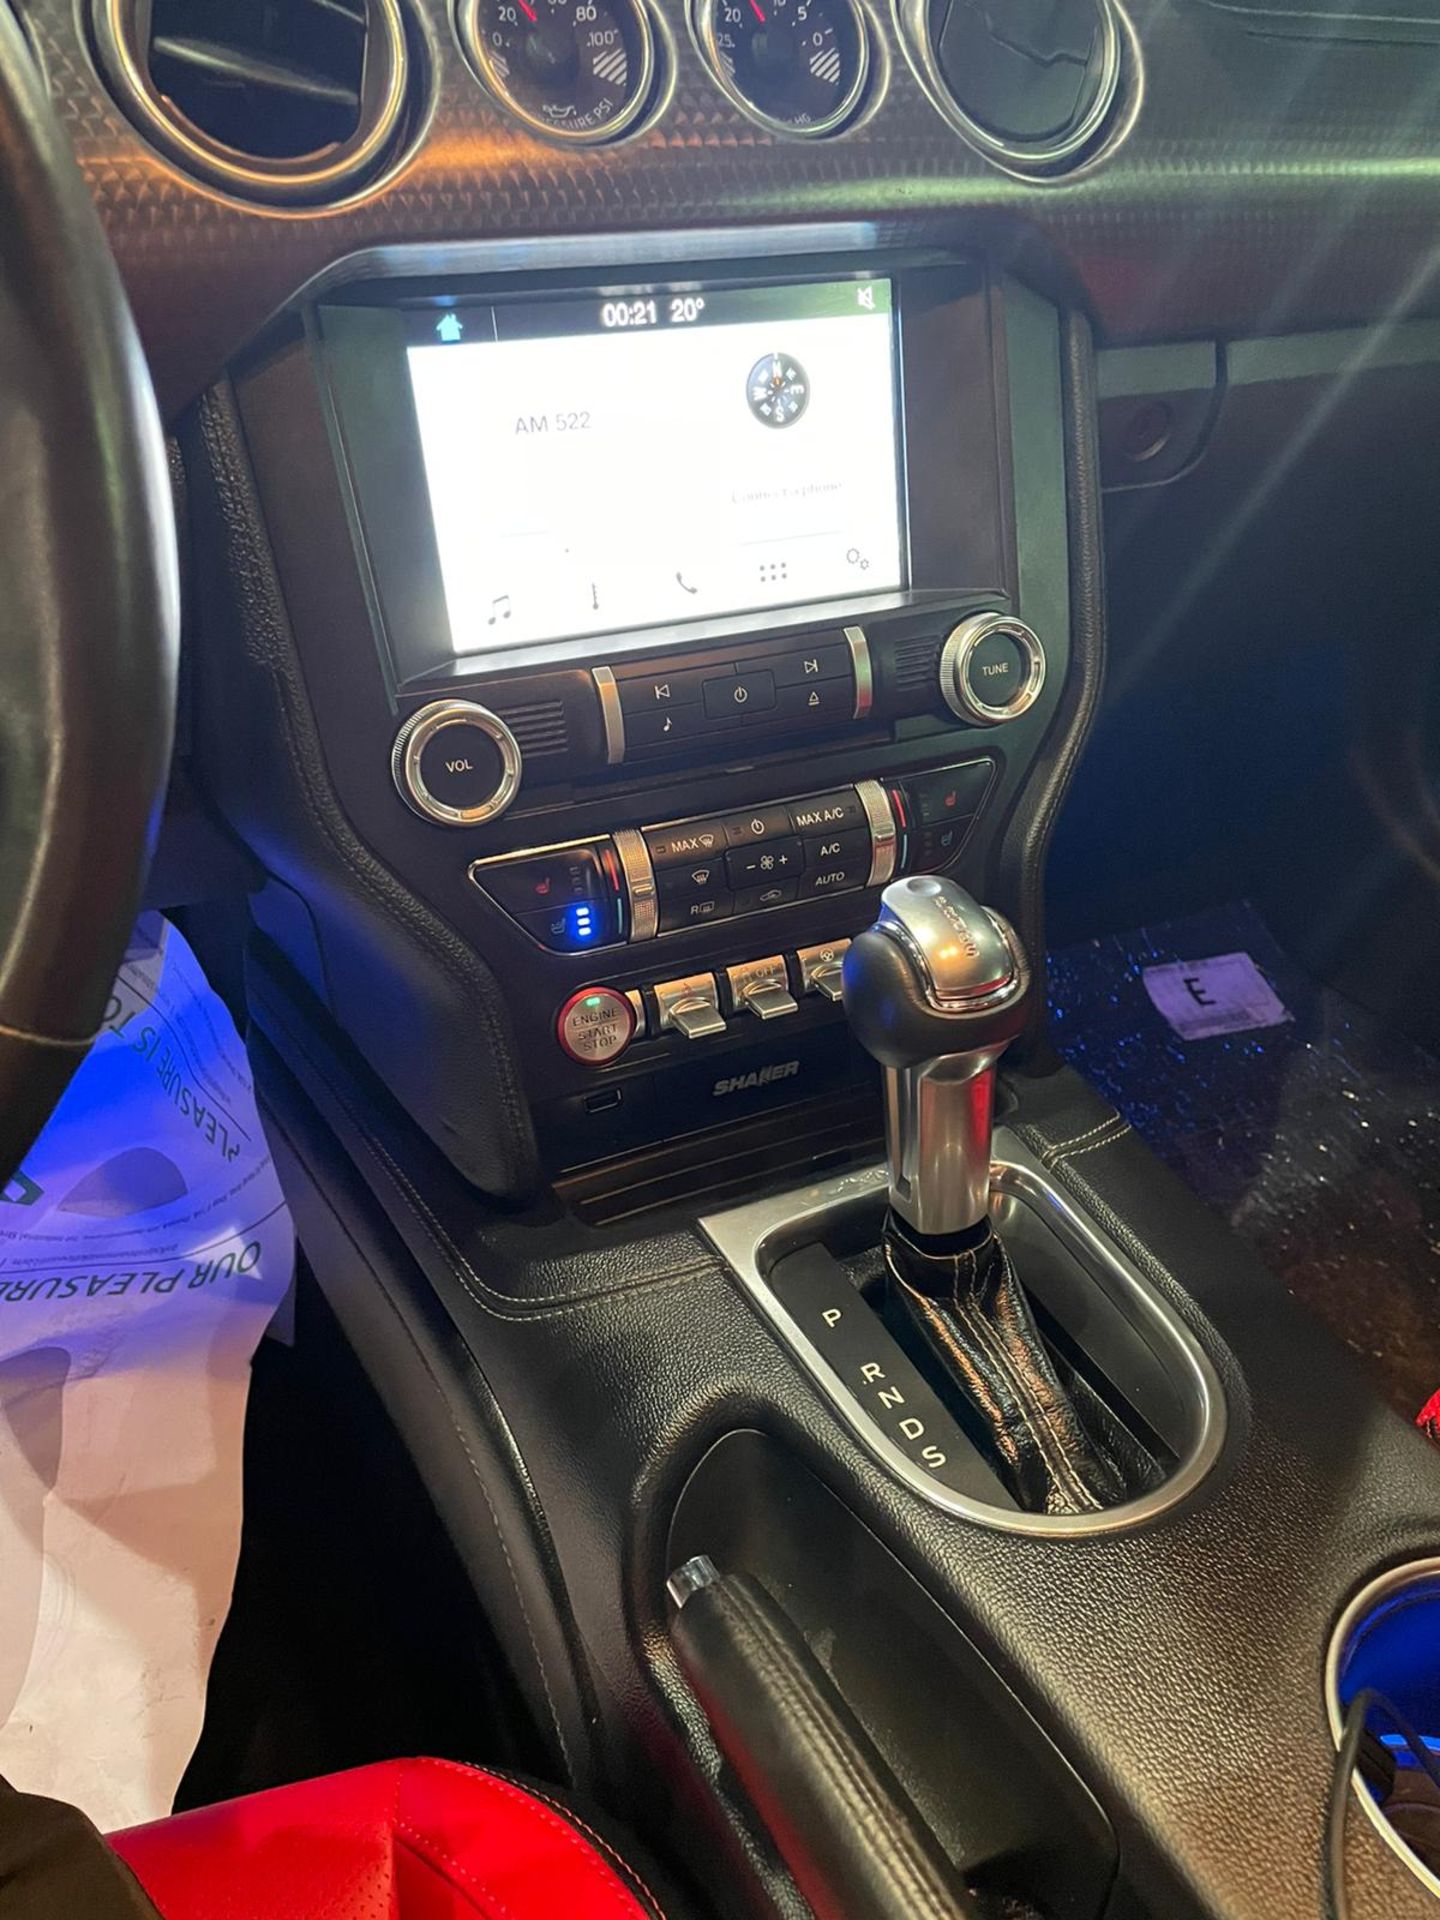 2019 mustang gt 5.0 V8 Shelby body kit 15,000 km. Uk mid APRIL With nova *PLUS VAT* - Image 7 of 9